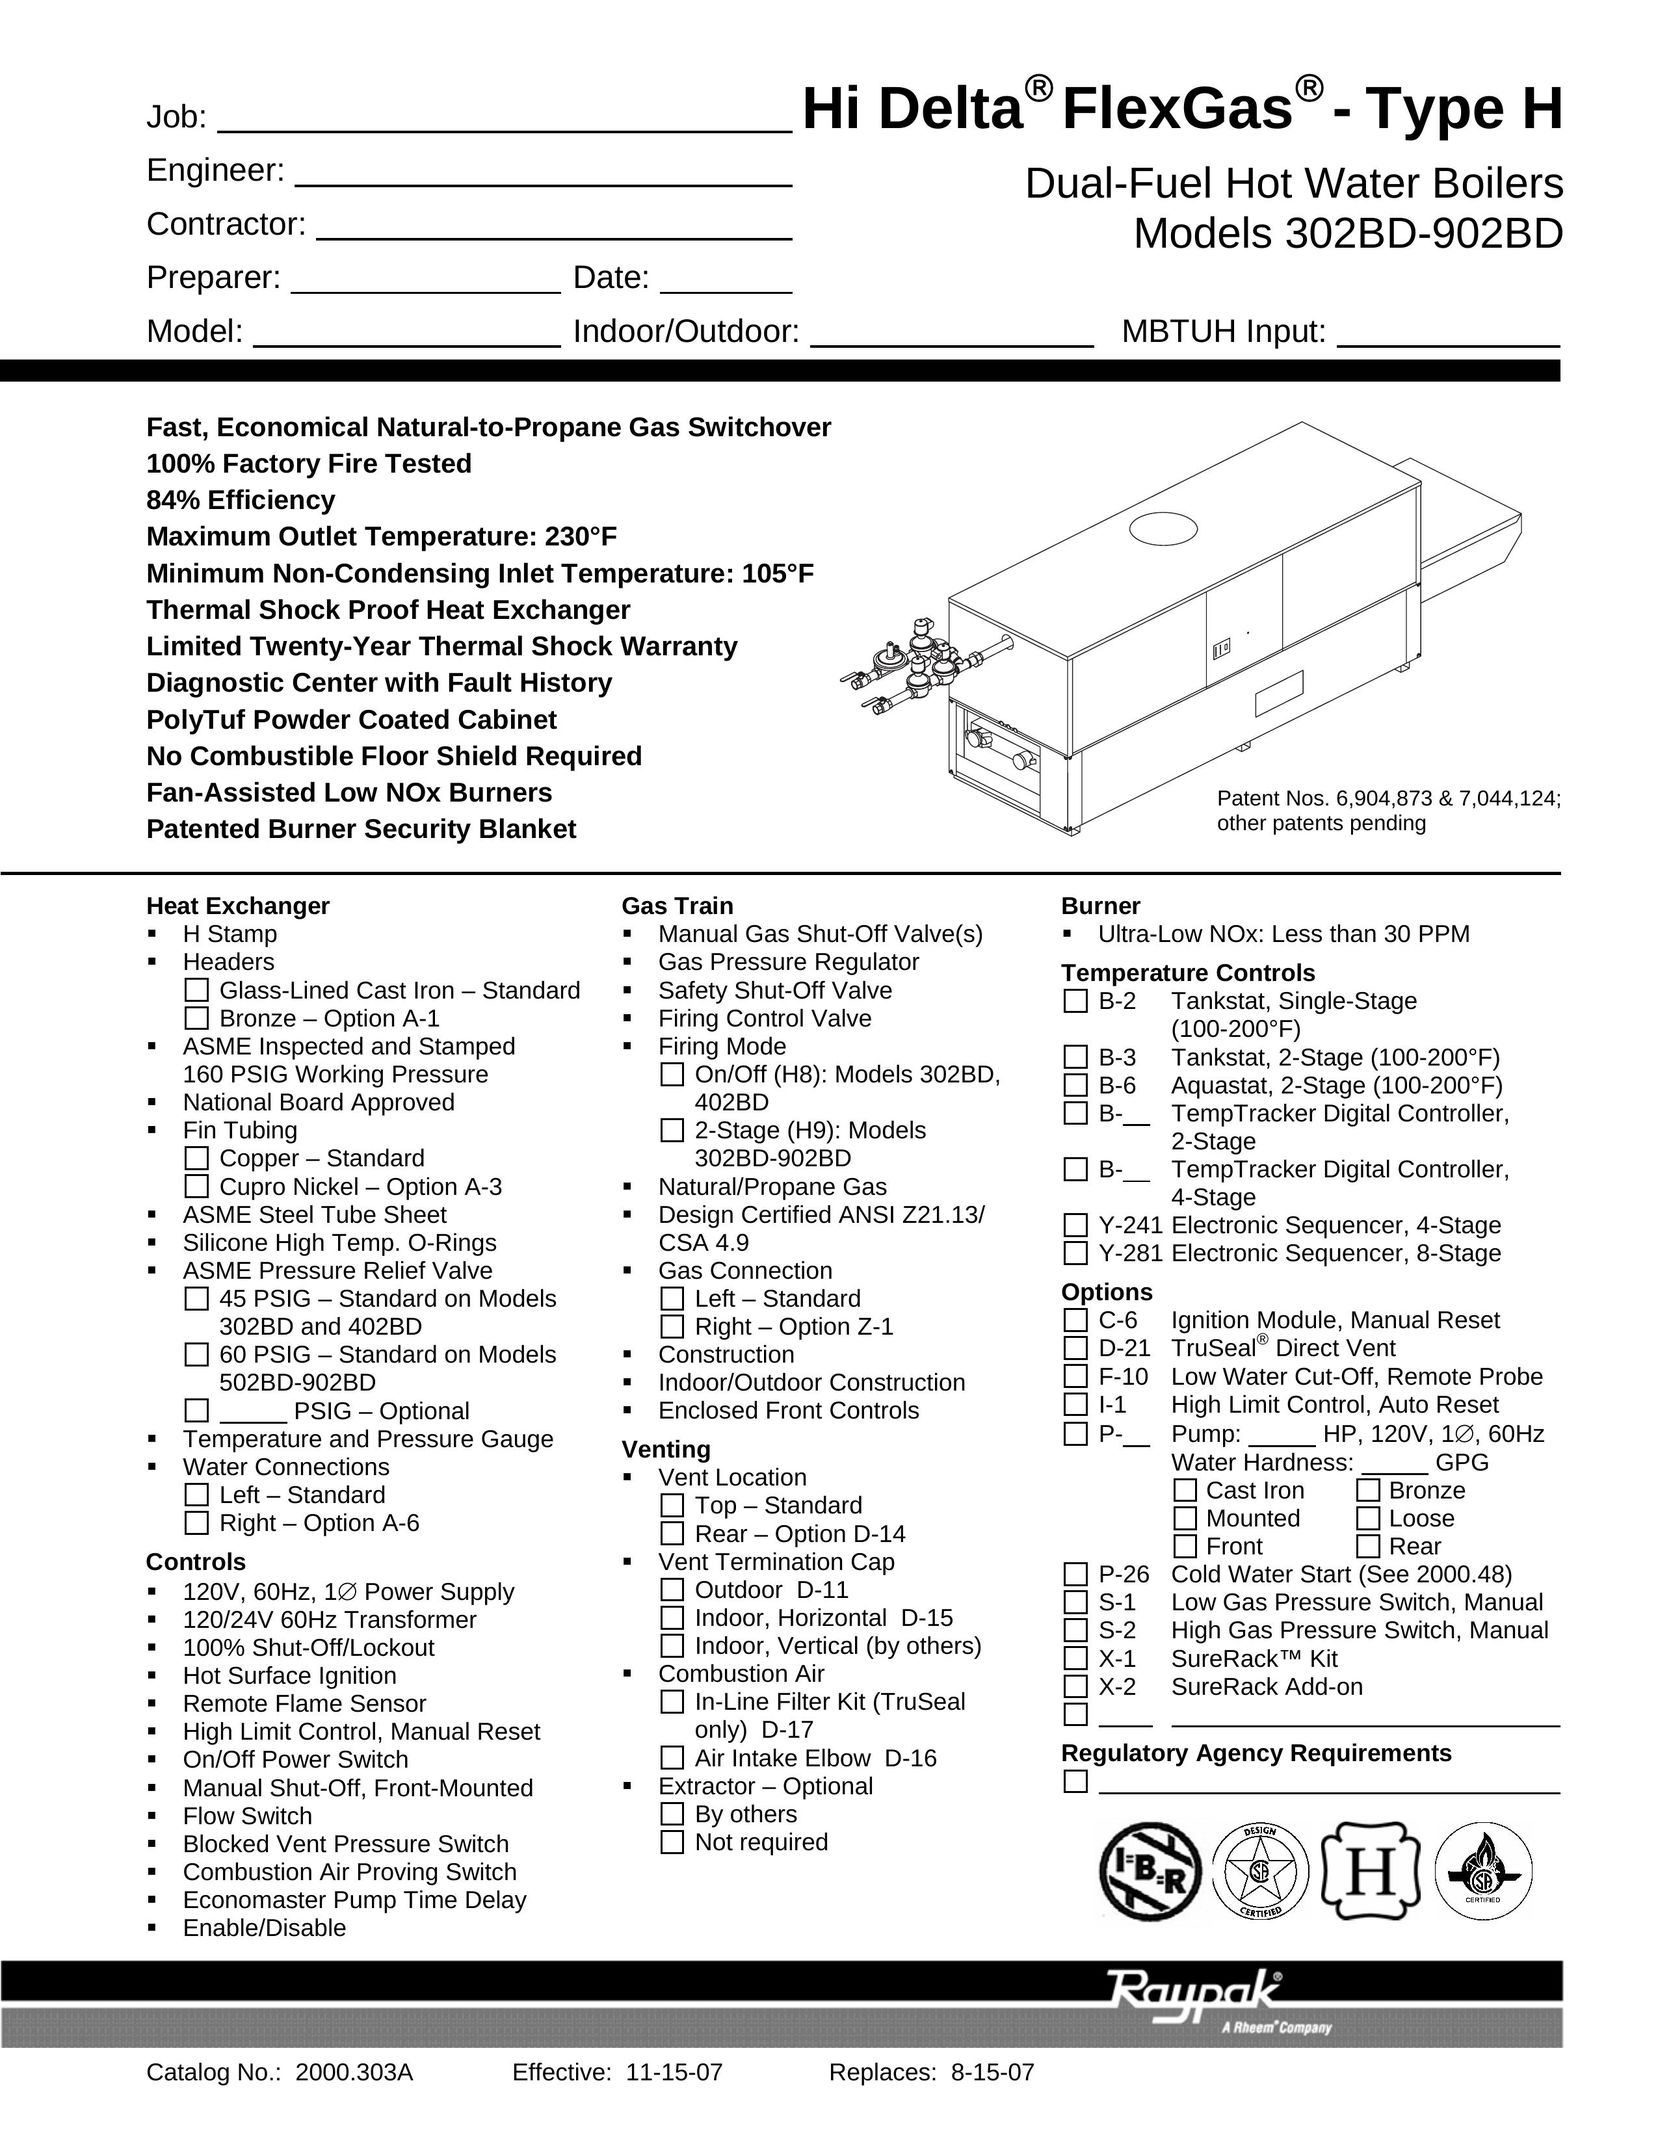 Raypak 302BD-902BD Boiler User Manual